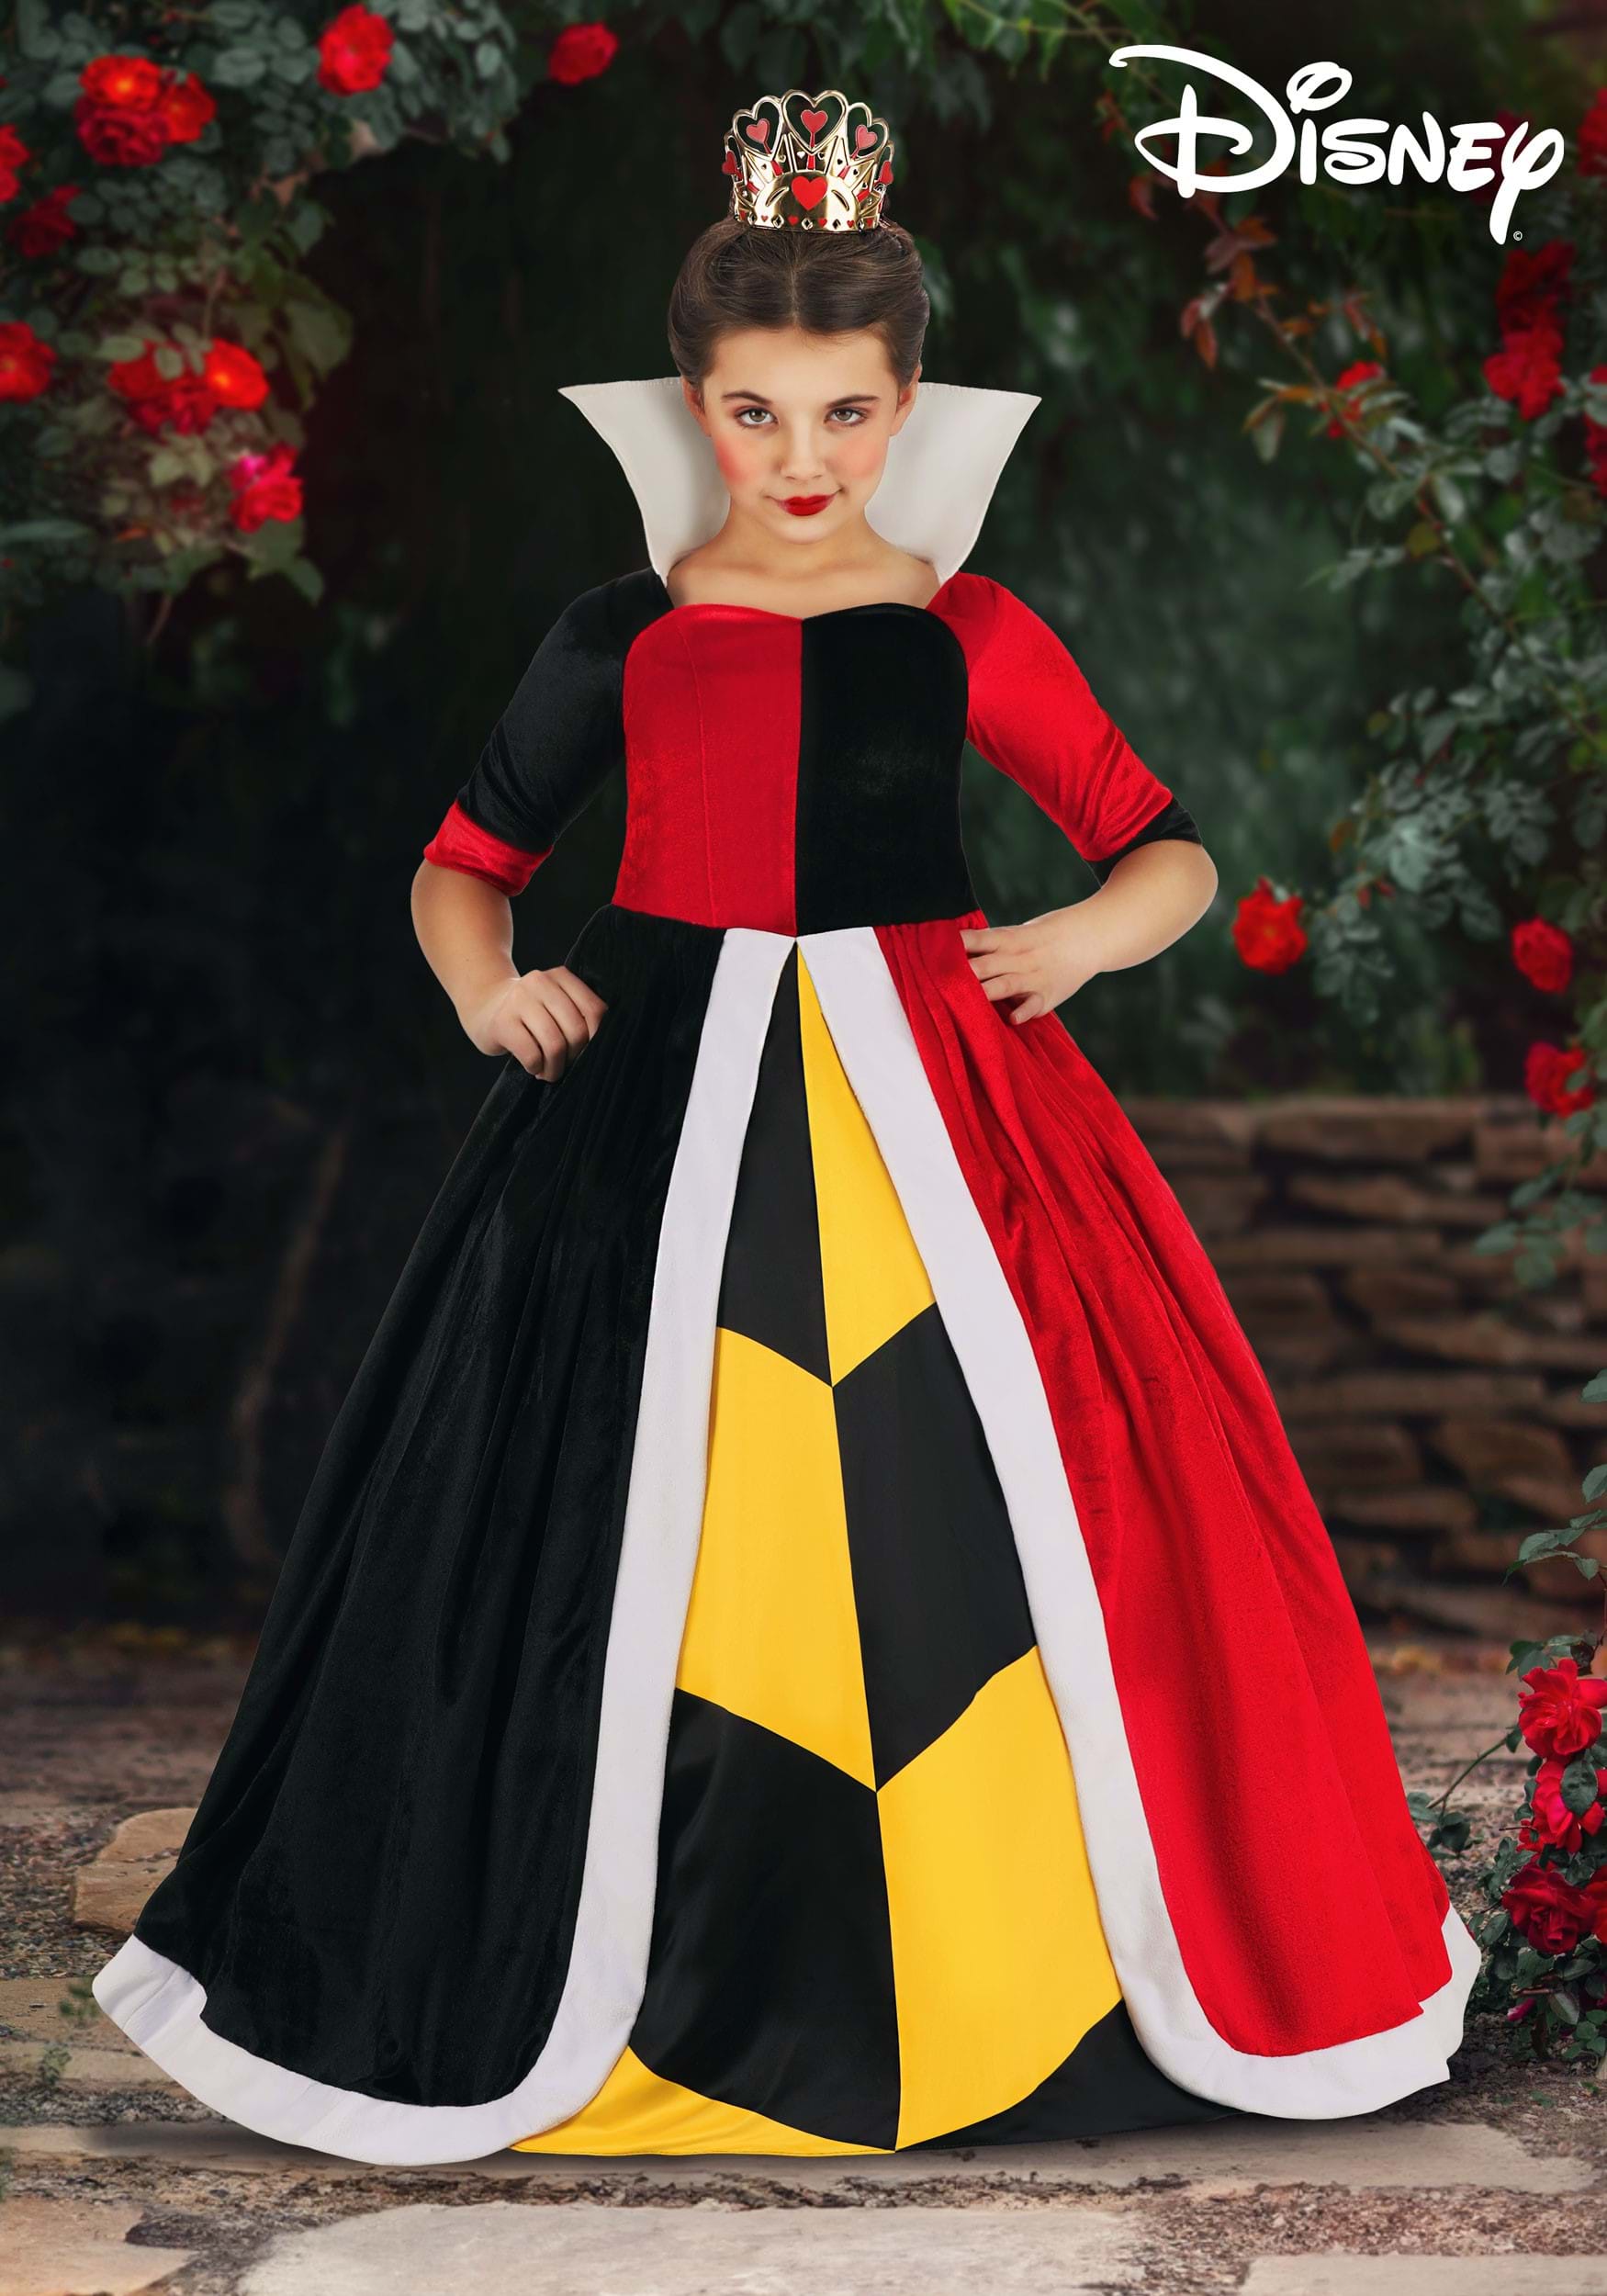 https://images.halloweencostumes.com/products/86111/1-1/kids-deluxe-disney-queen-of-hearts-costume-update.jpg